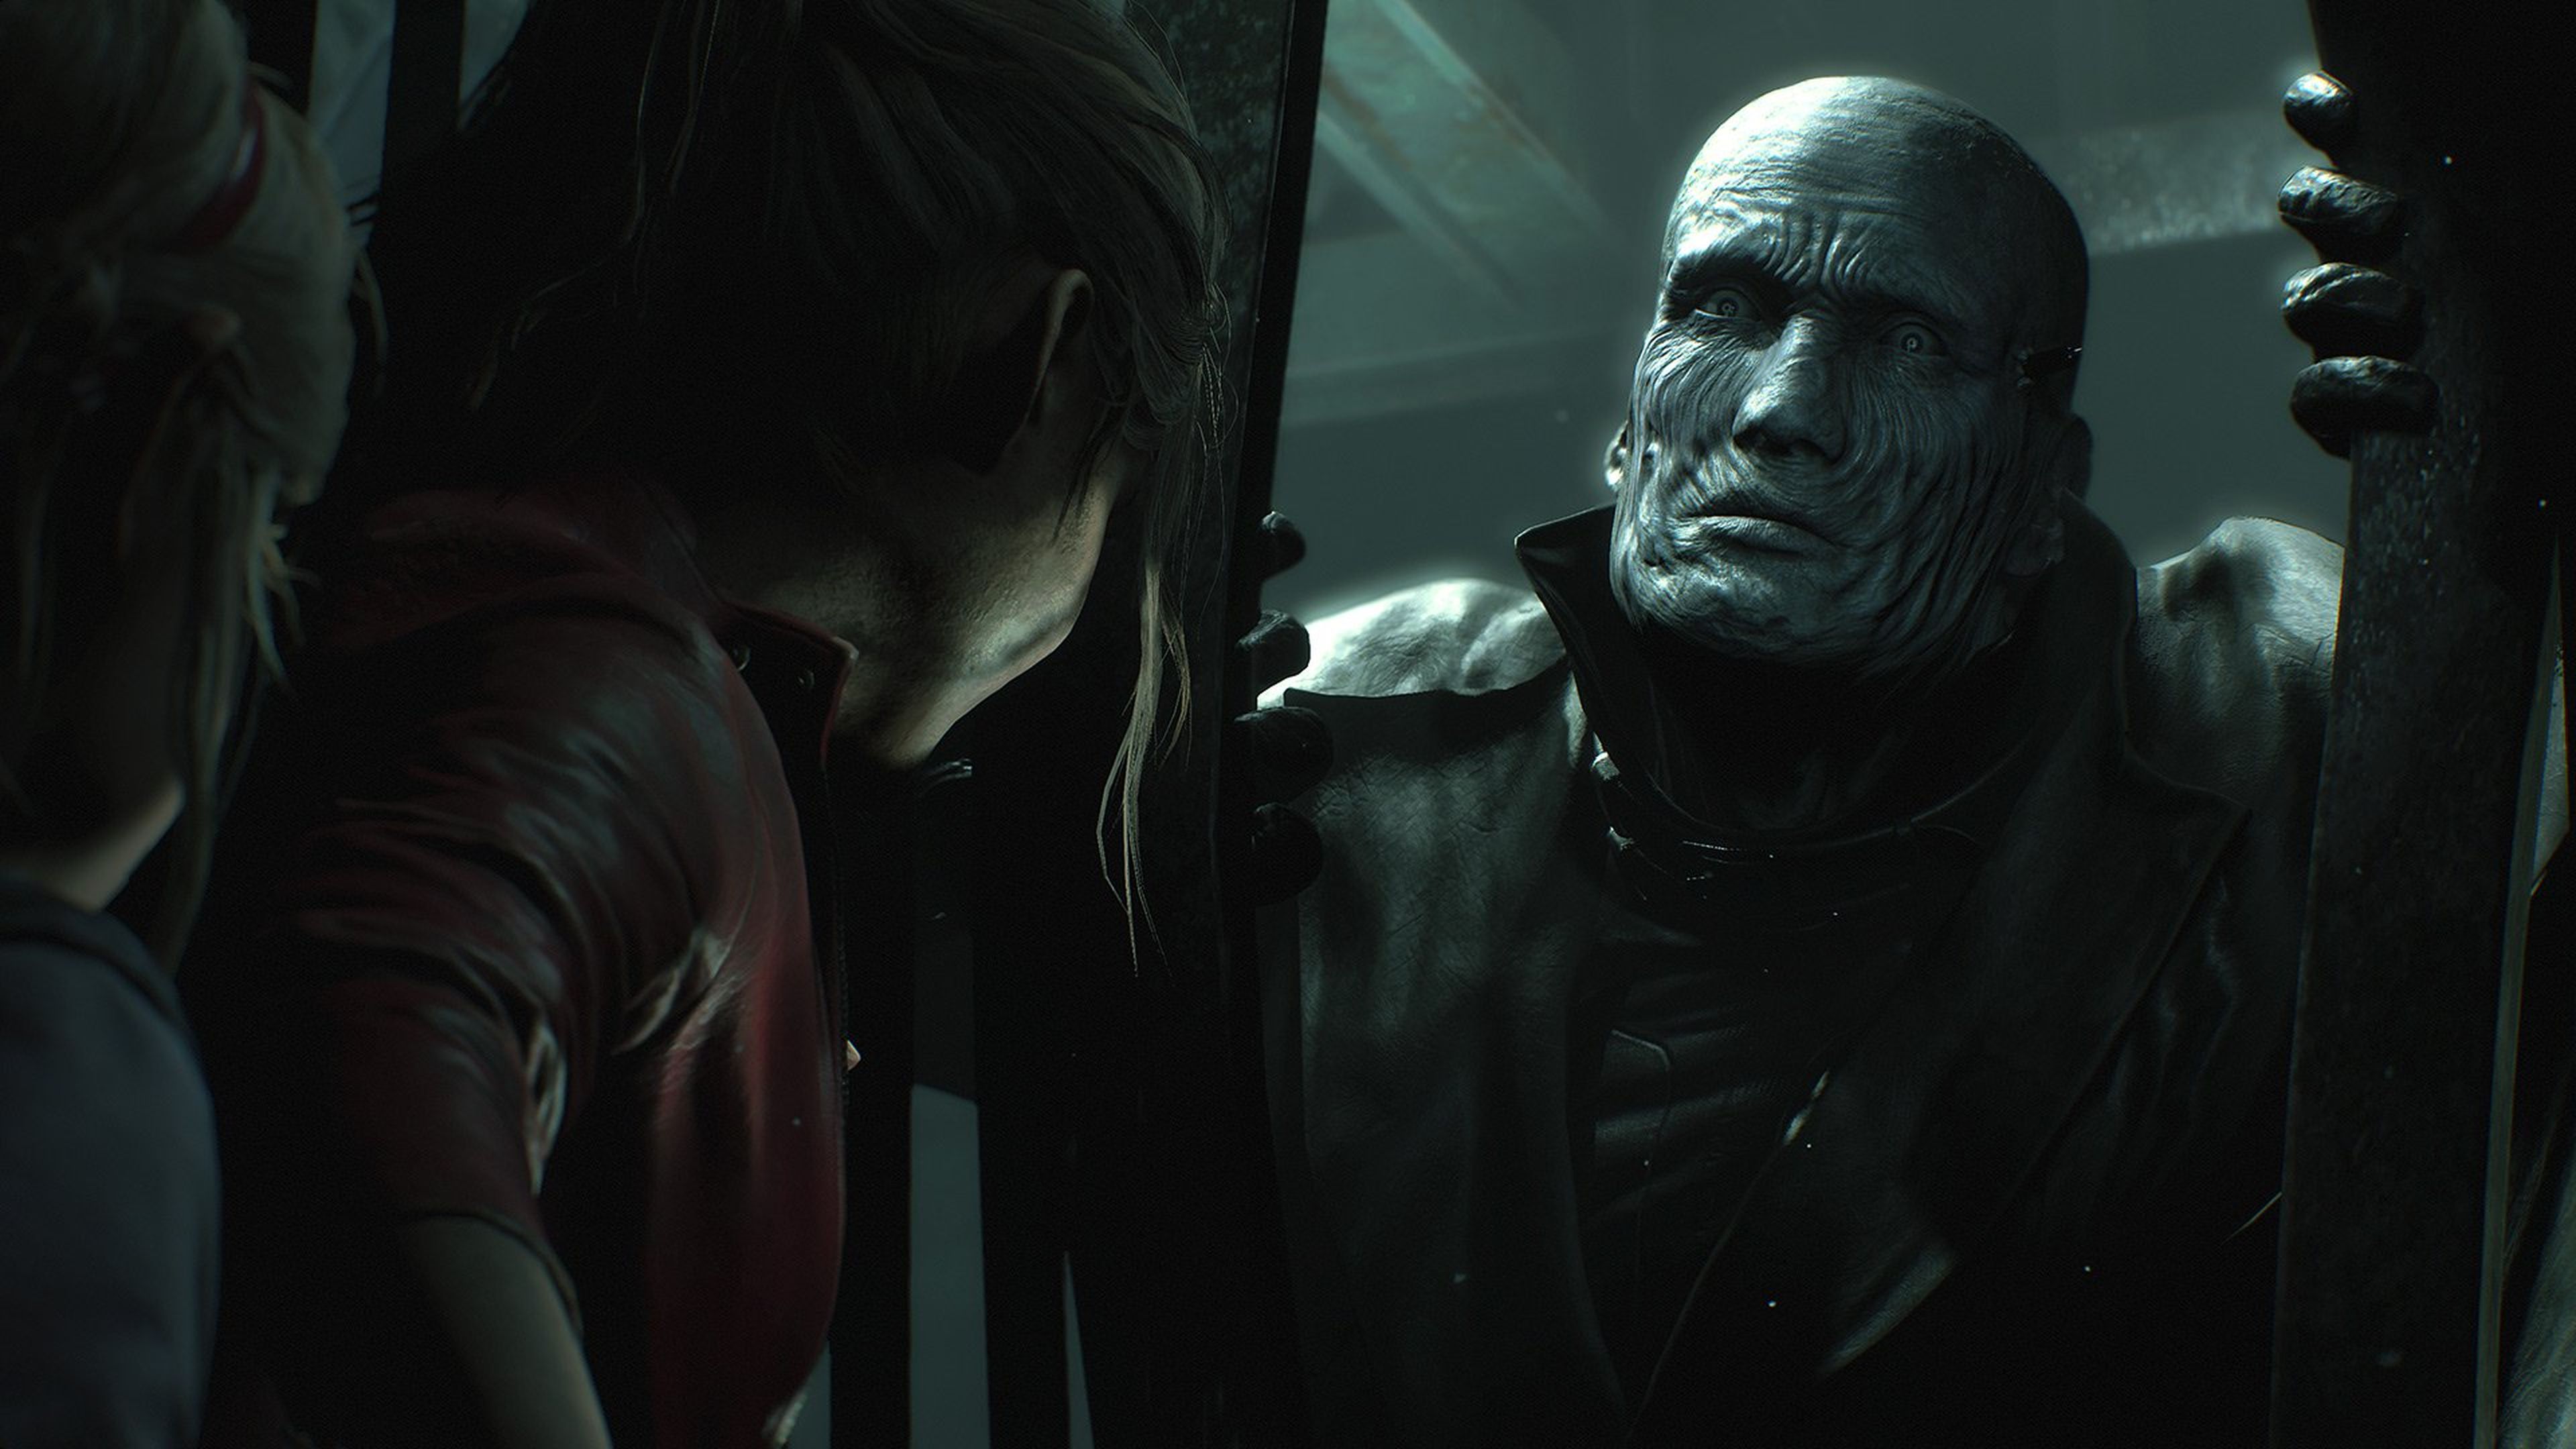 Análisis en vídeo de Resident Evil 2 para PS4, Xbox One y PC